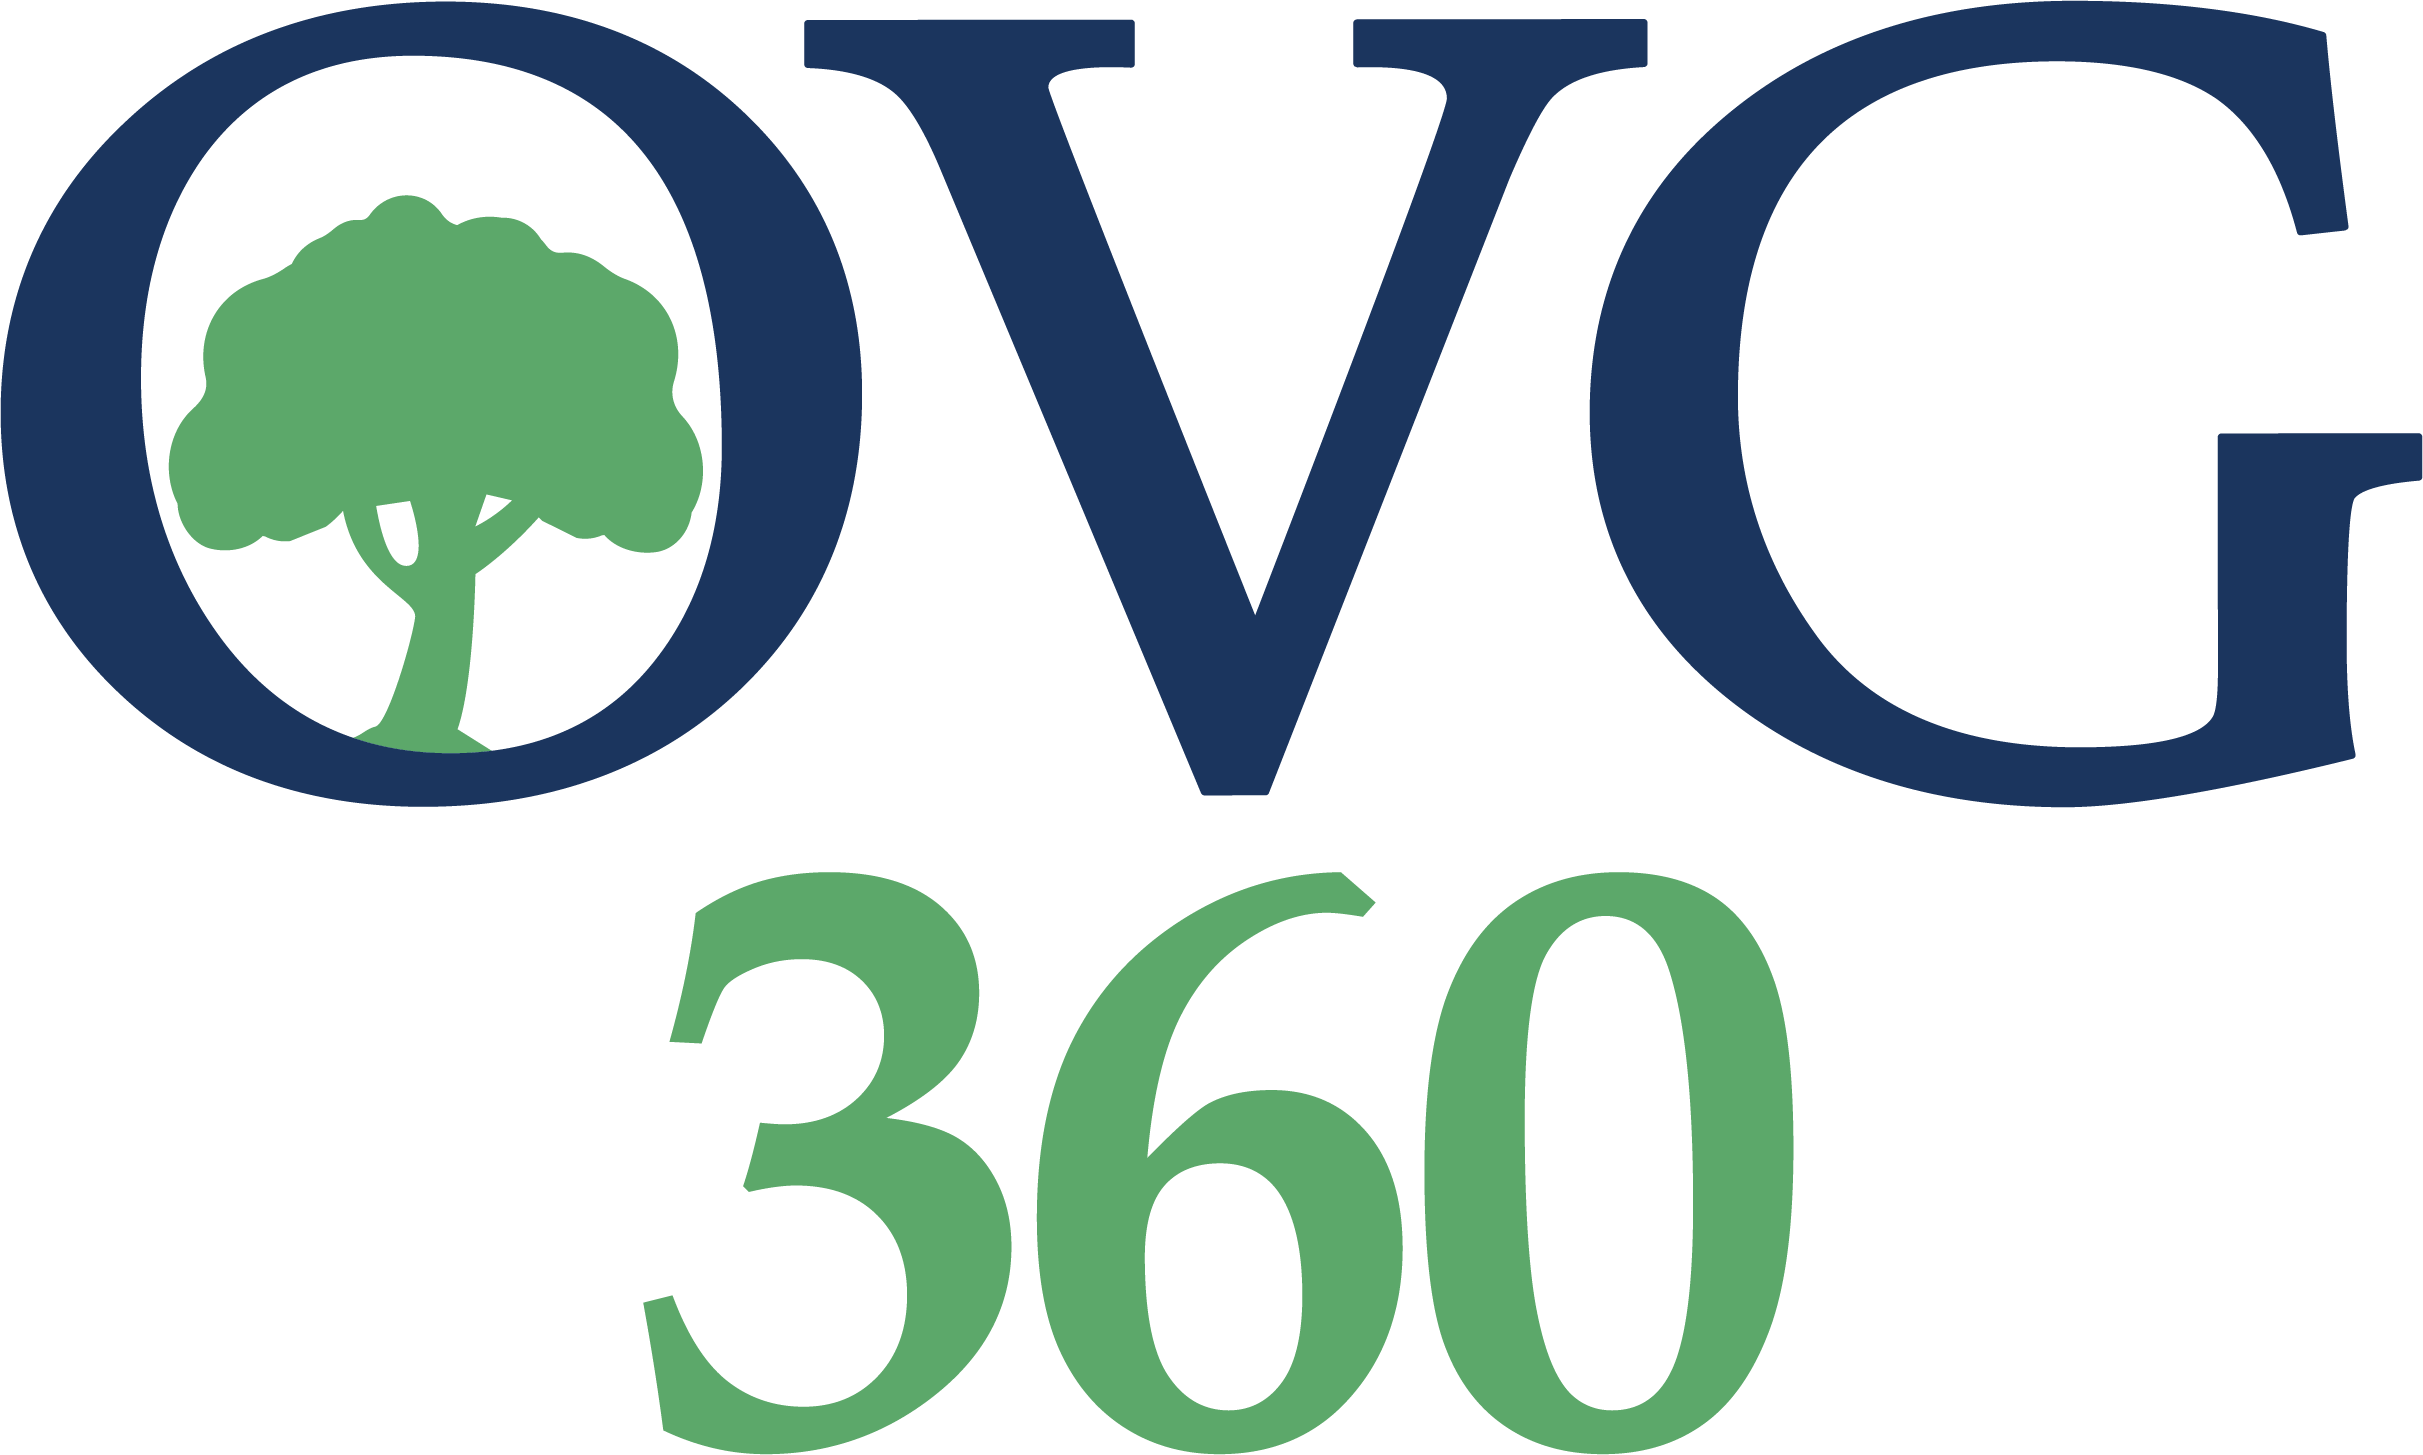 OVG_360_Logo_FullColor.png